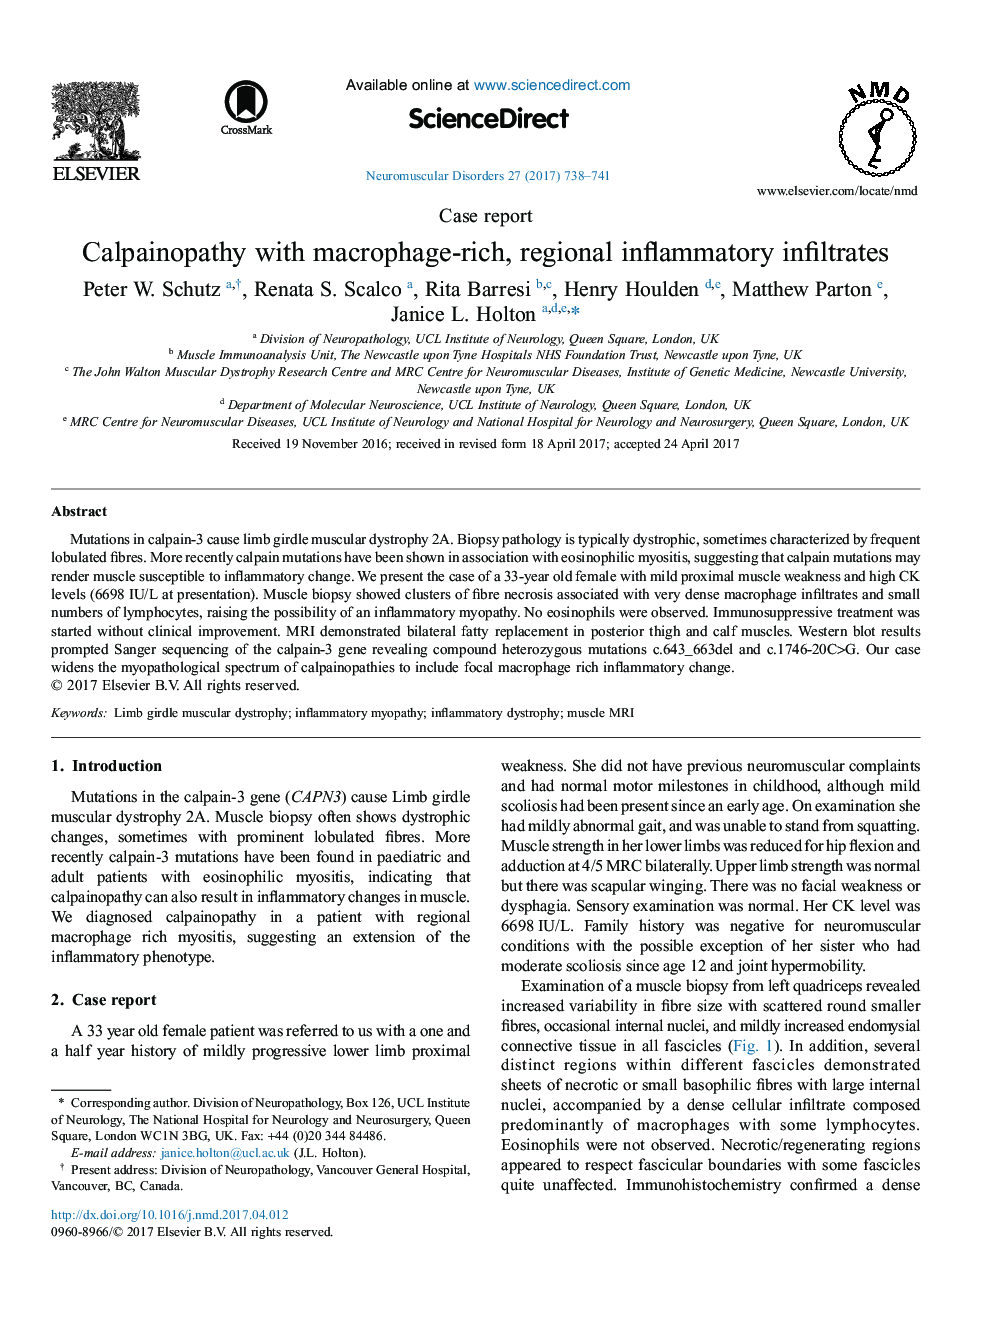 گزارش موردی کلپائینوپاتی با غده ماکروفاژ، نفوذی التهابی منطقه ای 